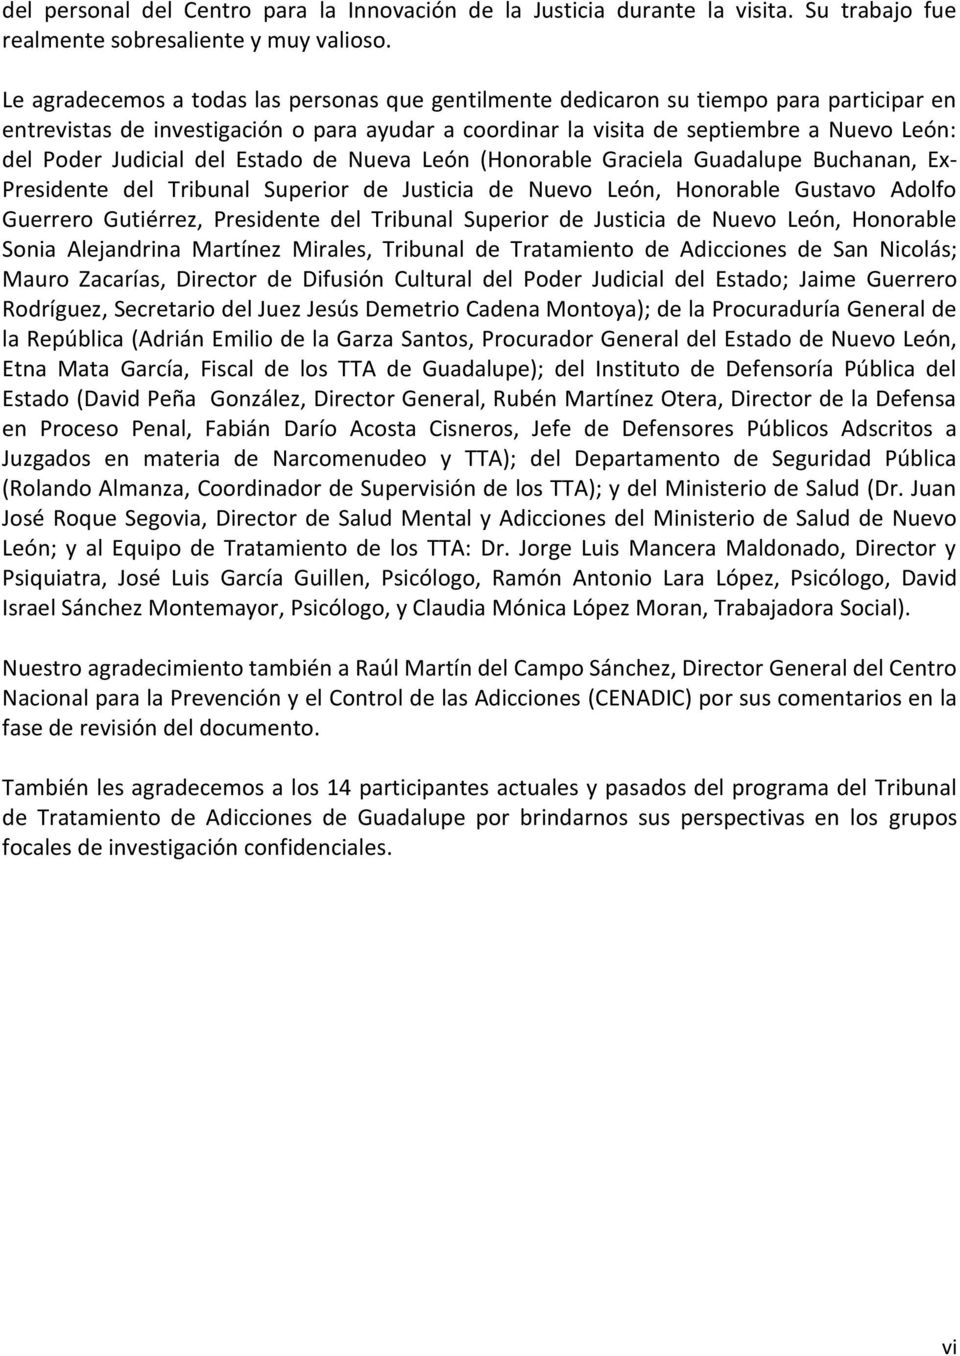 Judicial del Estado de Nueva León (Honorable Graciela Guadalupe Buchanan, Ex- Presidente del Tribunal Superior de Justicia de Nuevo León, Honorable Gustavo Adolfo Guerrero Gutiérrez, Presidente del